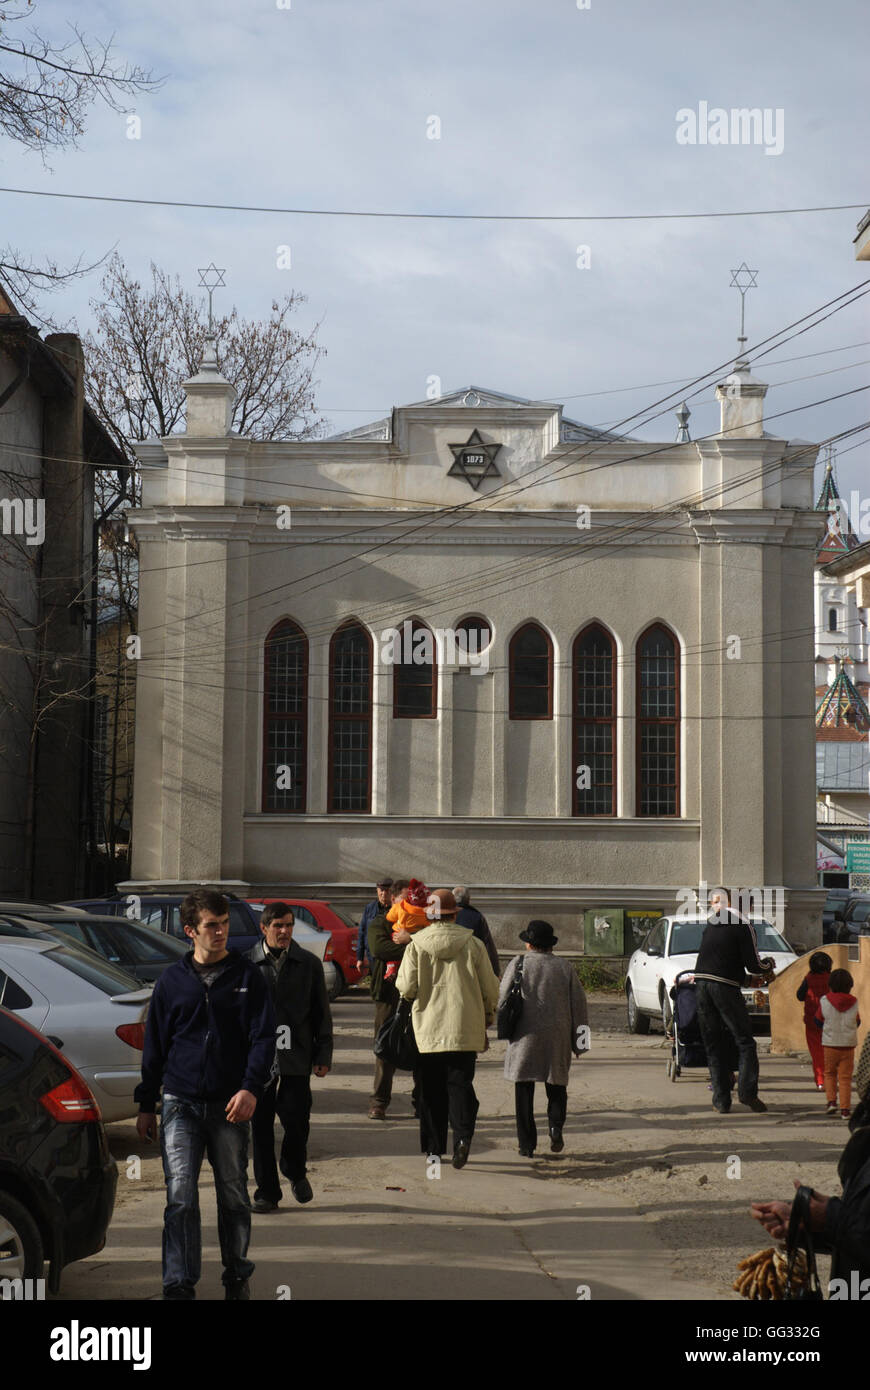 5515. La grande synagogue de Compulung Moldovese, Roumanie. Banque D'Images